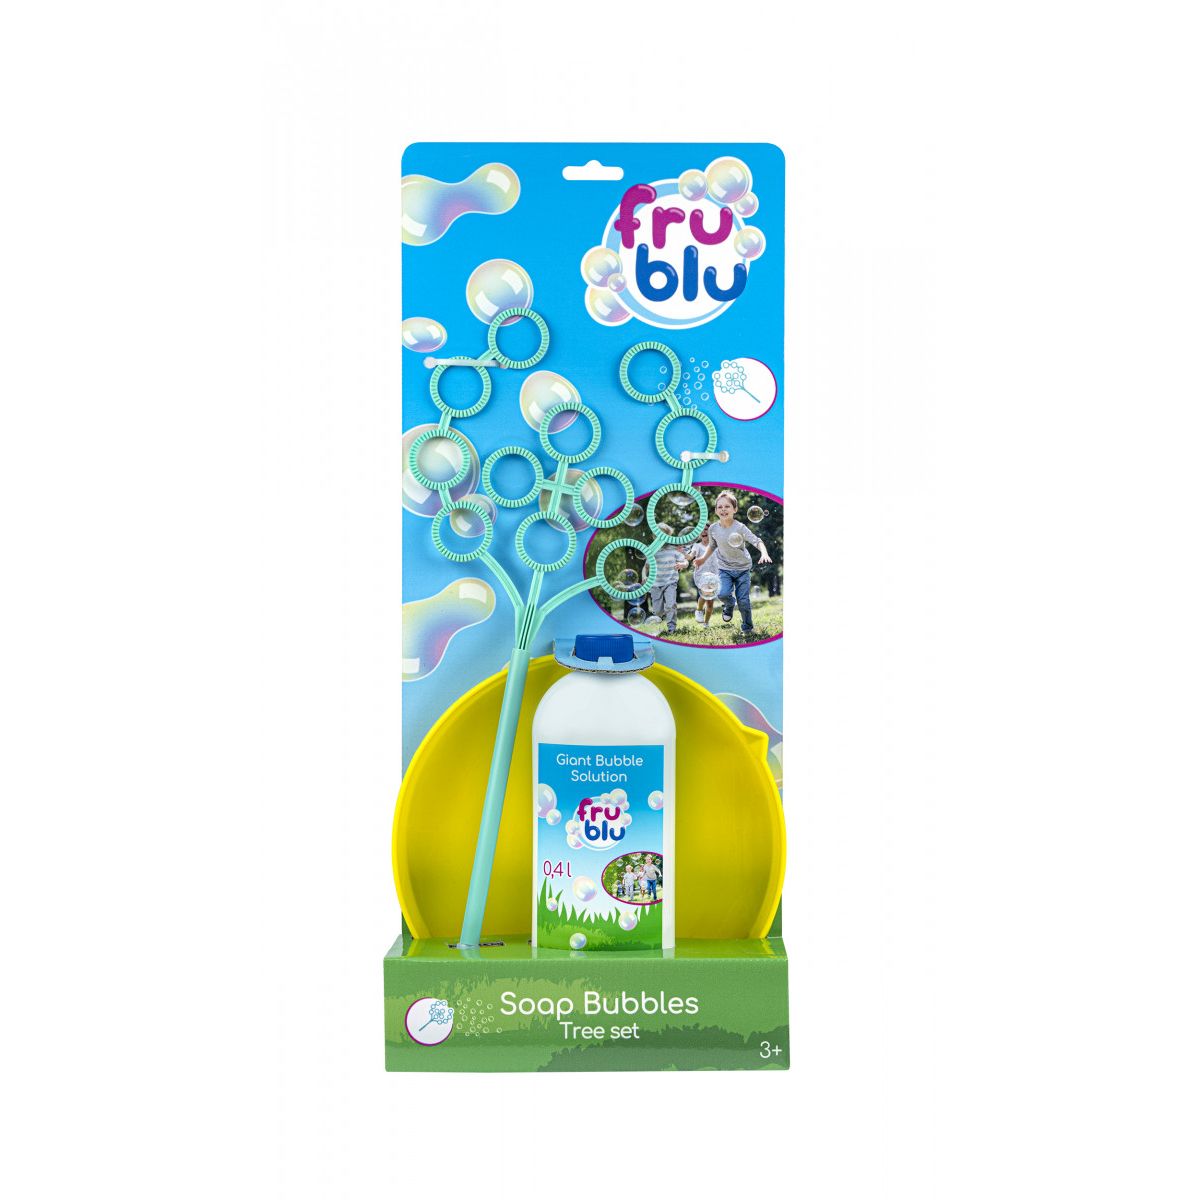 Bańki mydlane Fru Blu Zestaw drzewko z talerzykiem + płyn 0,4 l Tm Toys (DKF0155)